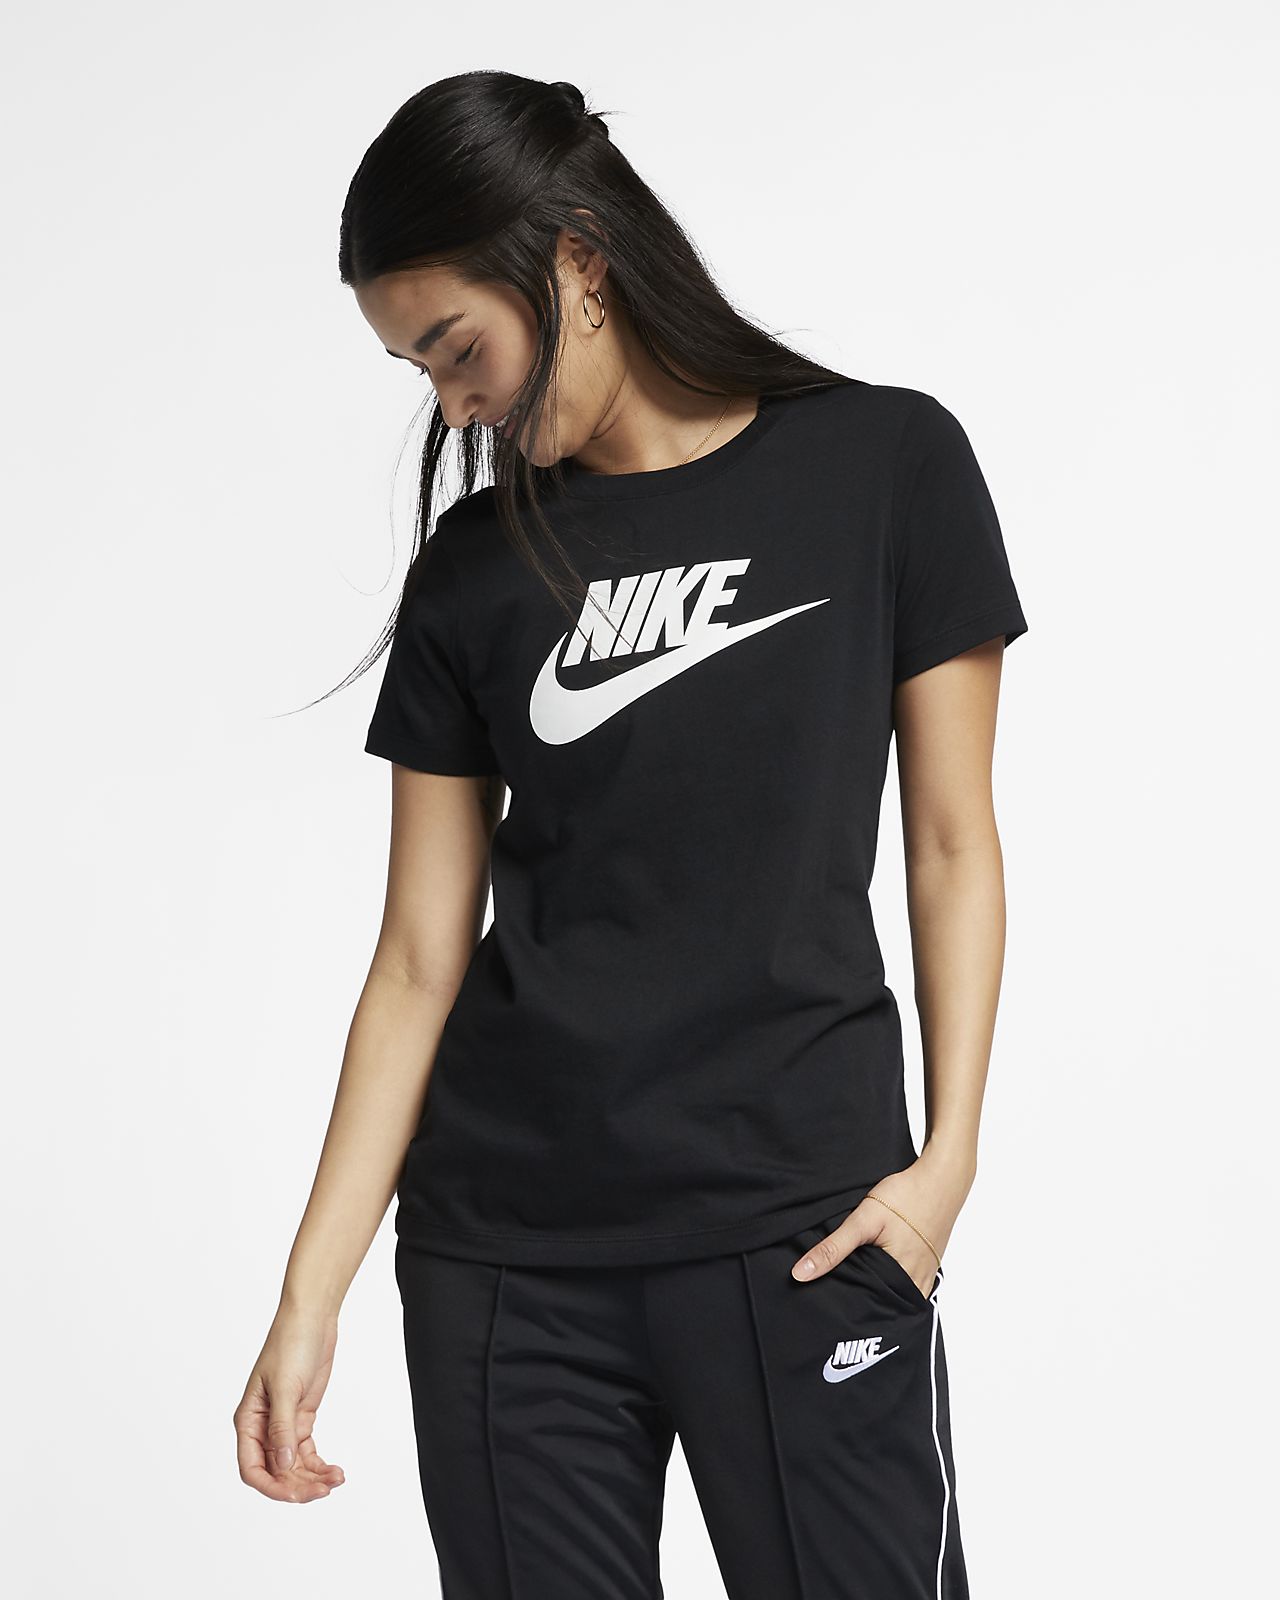 Nike公式 ナイキ スポーツウェア エッセンシャル ウィメンズ Tシャツ